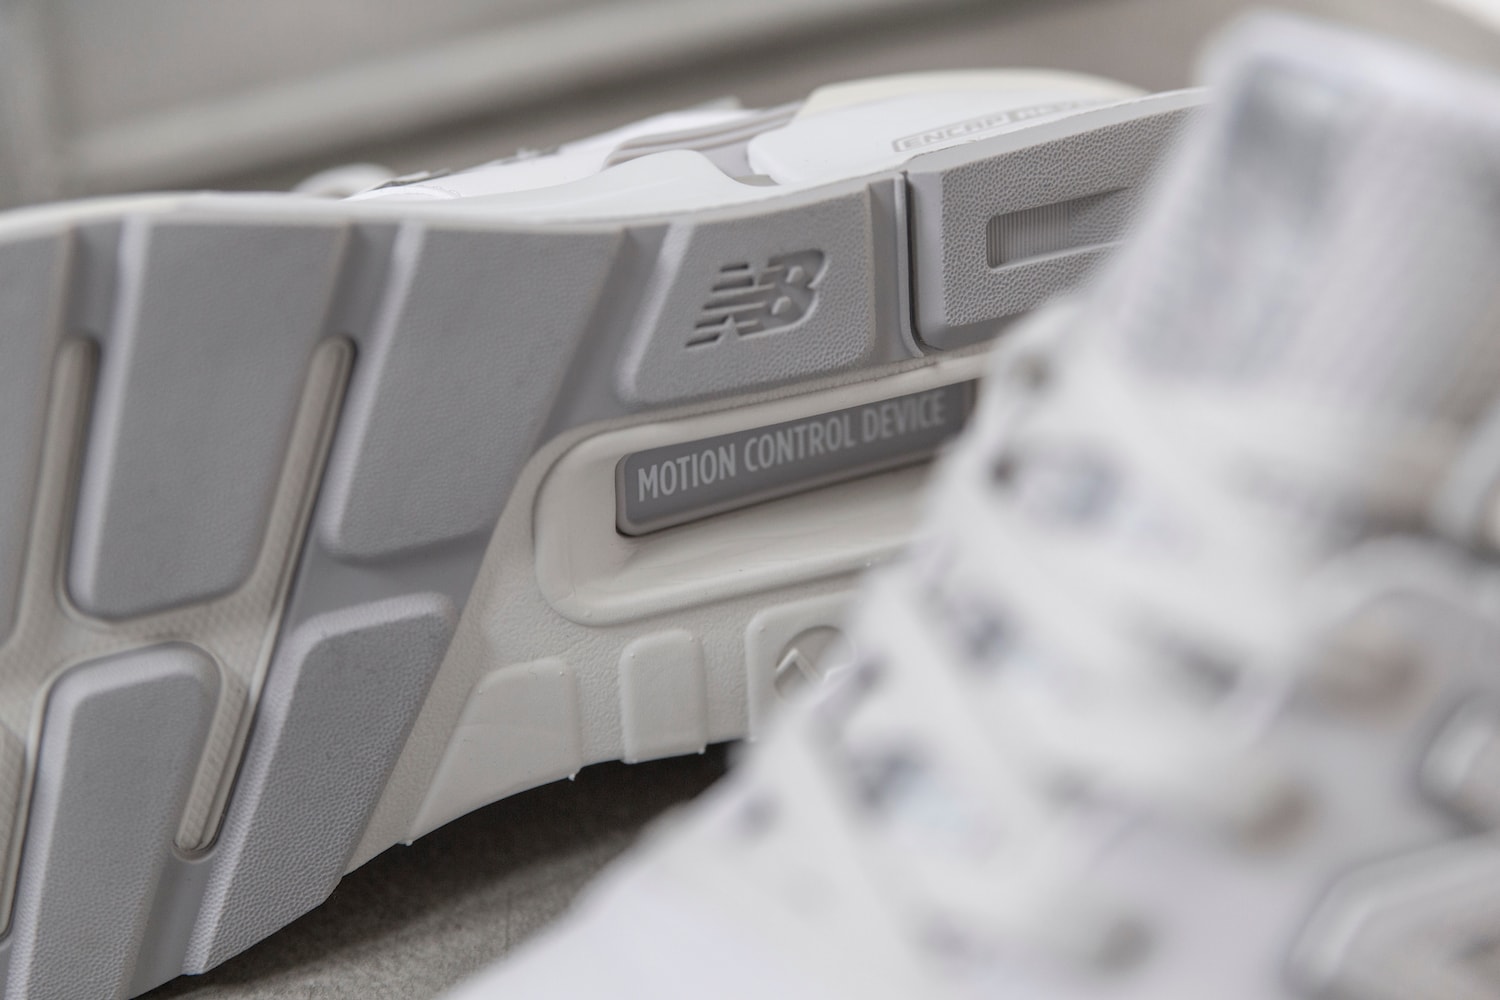 New Balance x MADNESS 997S 联名鞋款正式登场